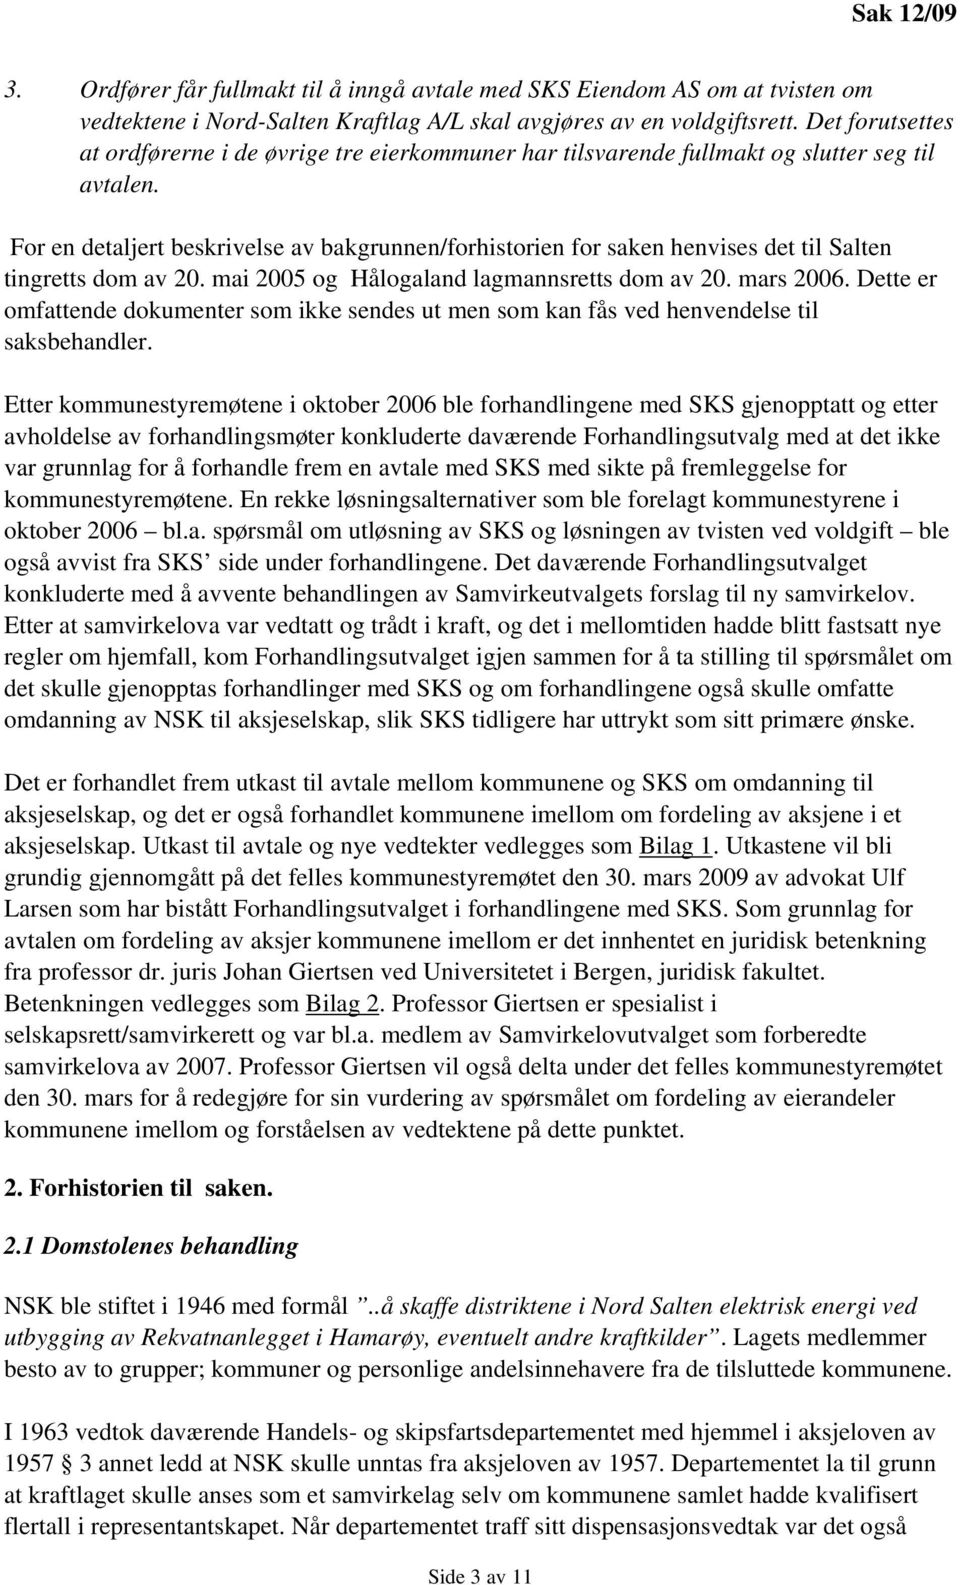 For en detaljert beskrivelse av bakgrunnen/forhistorien for saken henvises det til Salten tingretts dom av 20. mai 2005 og Hålogaland lagmannsretts dom av 20. mars 2006.